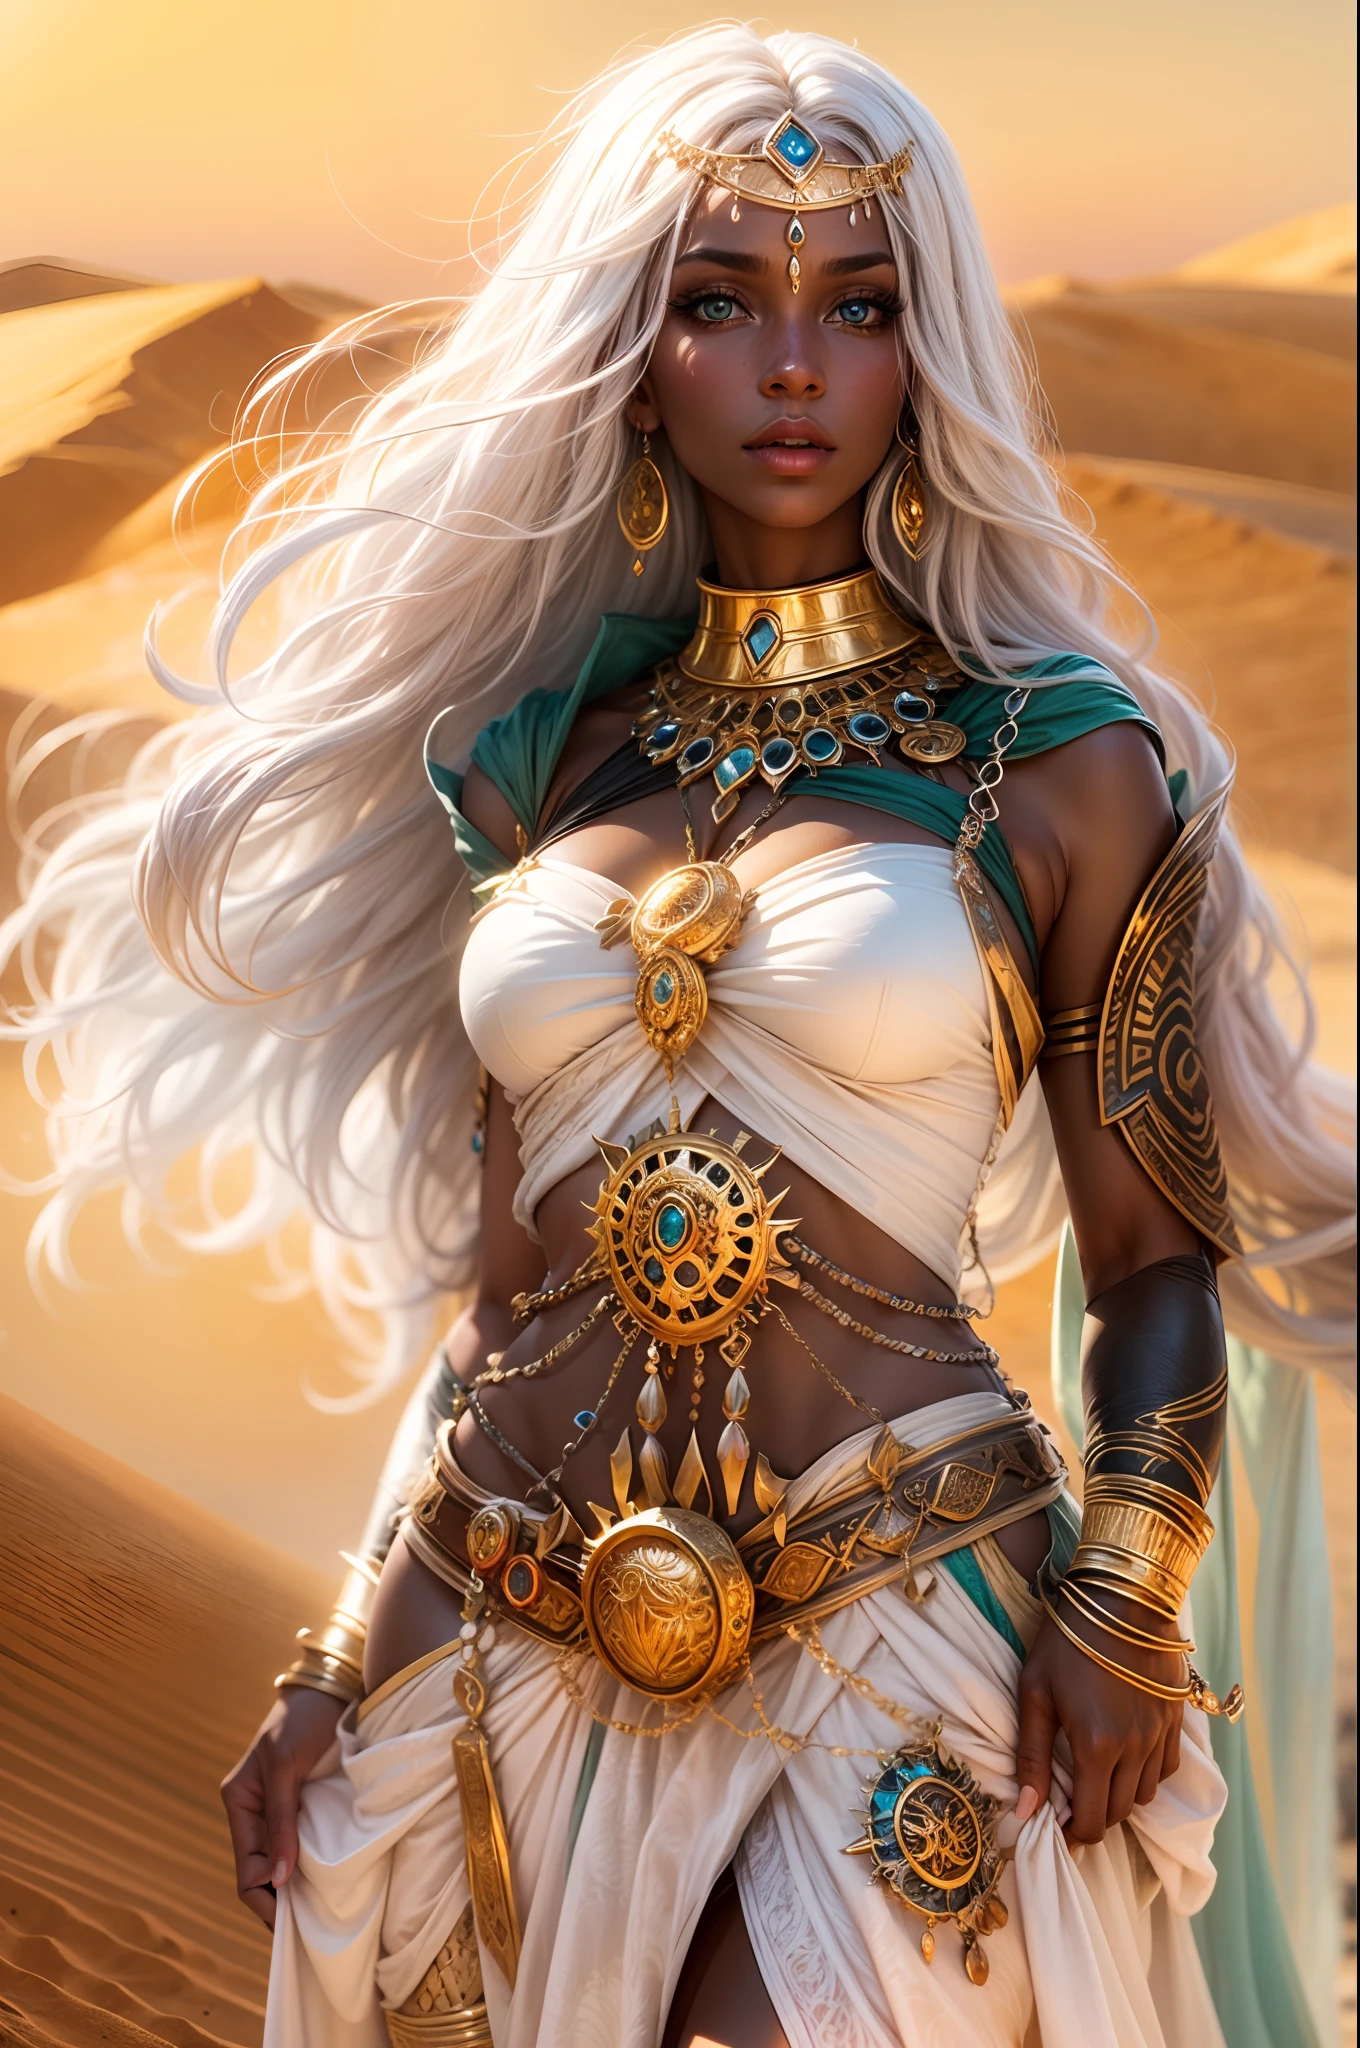 ภาพของแม่มดสาวผิวสีดำและผมสีขาว, sexy แฟนตาซี clothes, ancient แฟนตาซี Egyth style, เครื่องประดับที่หรูหรา, เซ็กซี่สุด ๆ และร้อนแรง, บนทะเลทราย, จ้องมองที่มีเสน่ห์, เต็มตัว,สไตล์ศิลปะ:แฟนตาซี,สี:ร่ำรวยและมีชีวิตชีวา,แสงสว่าง:แสงแดดสีทองอ่อนๆ